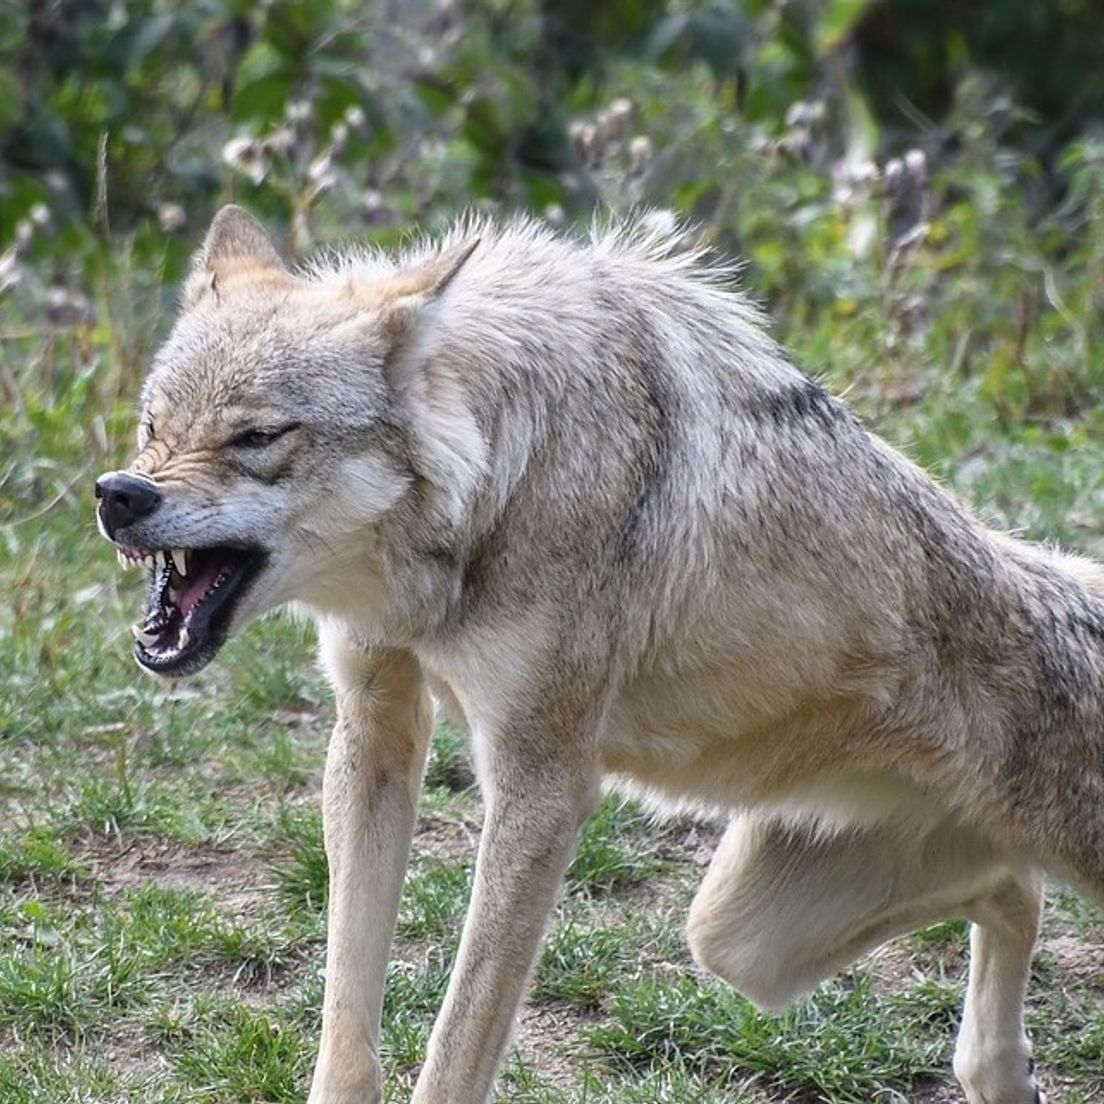 Abschuss von Wölfen nach Nutztierrissen: Lemke will Prozess vereinfachen